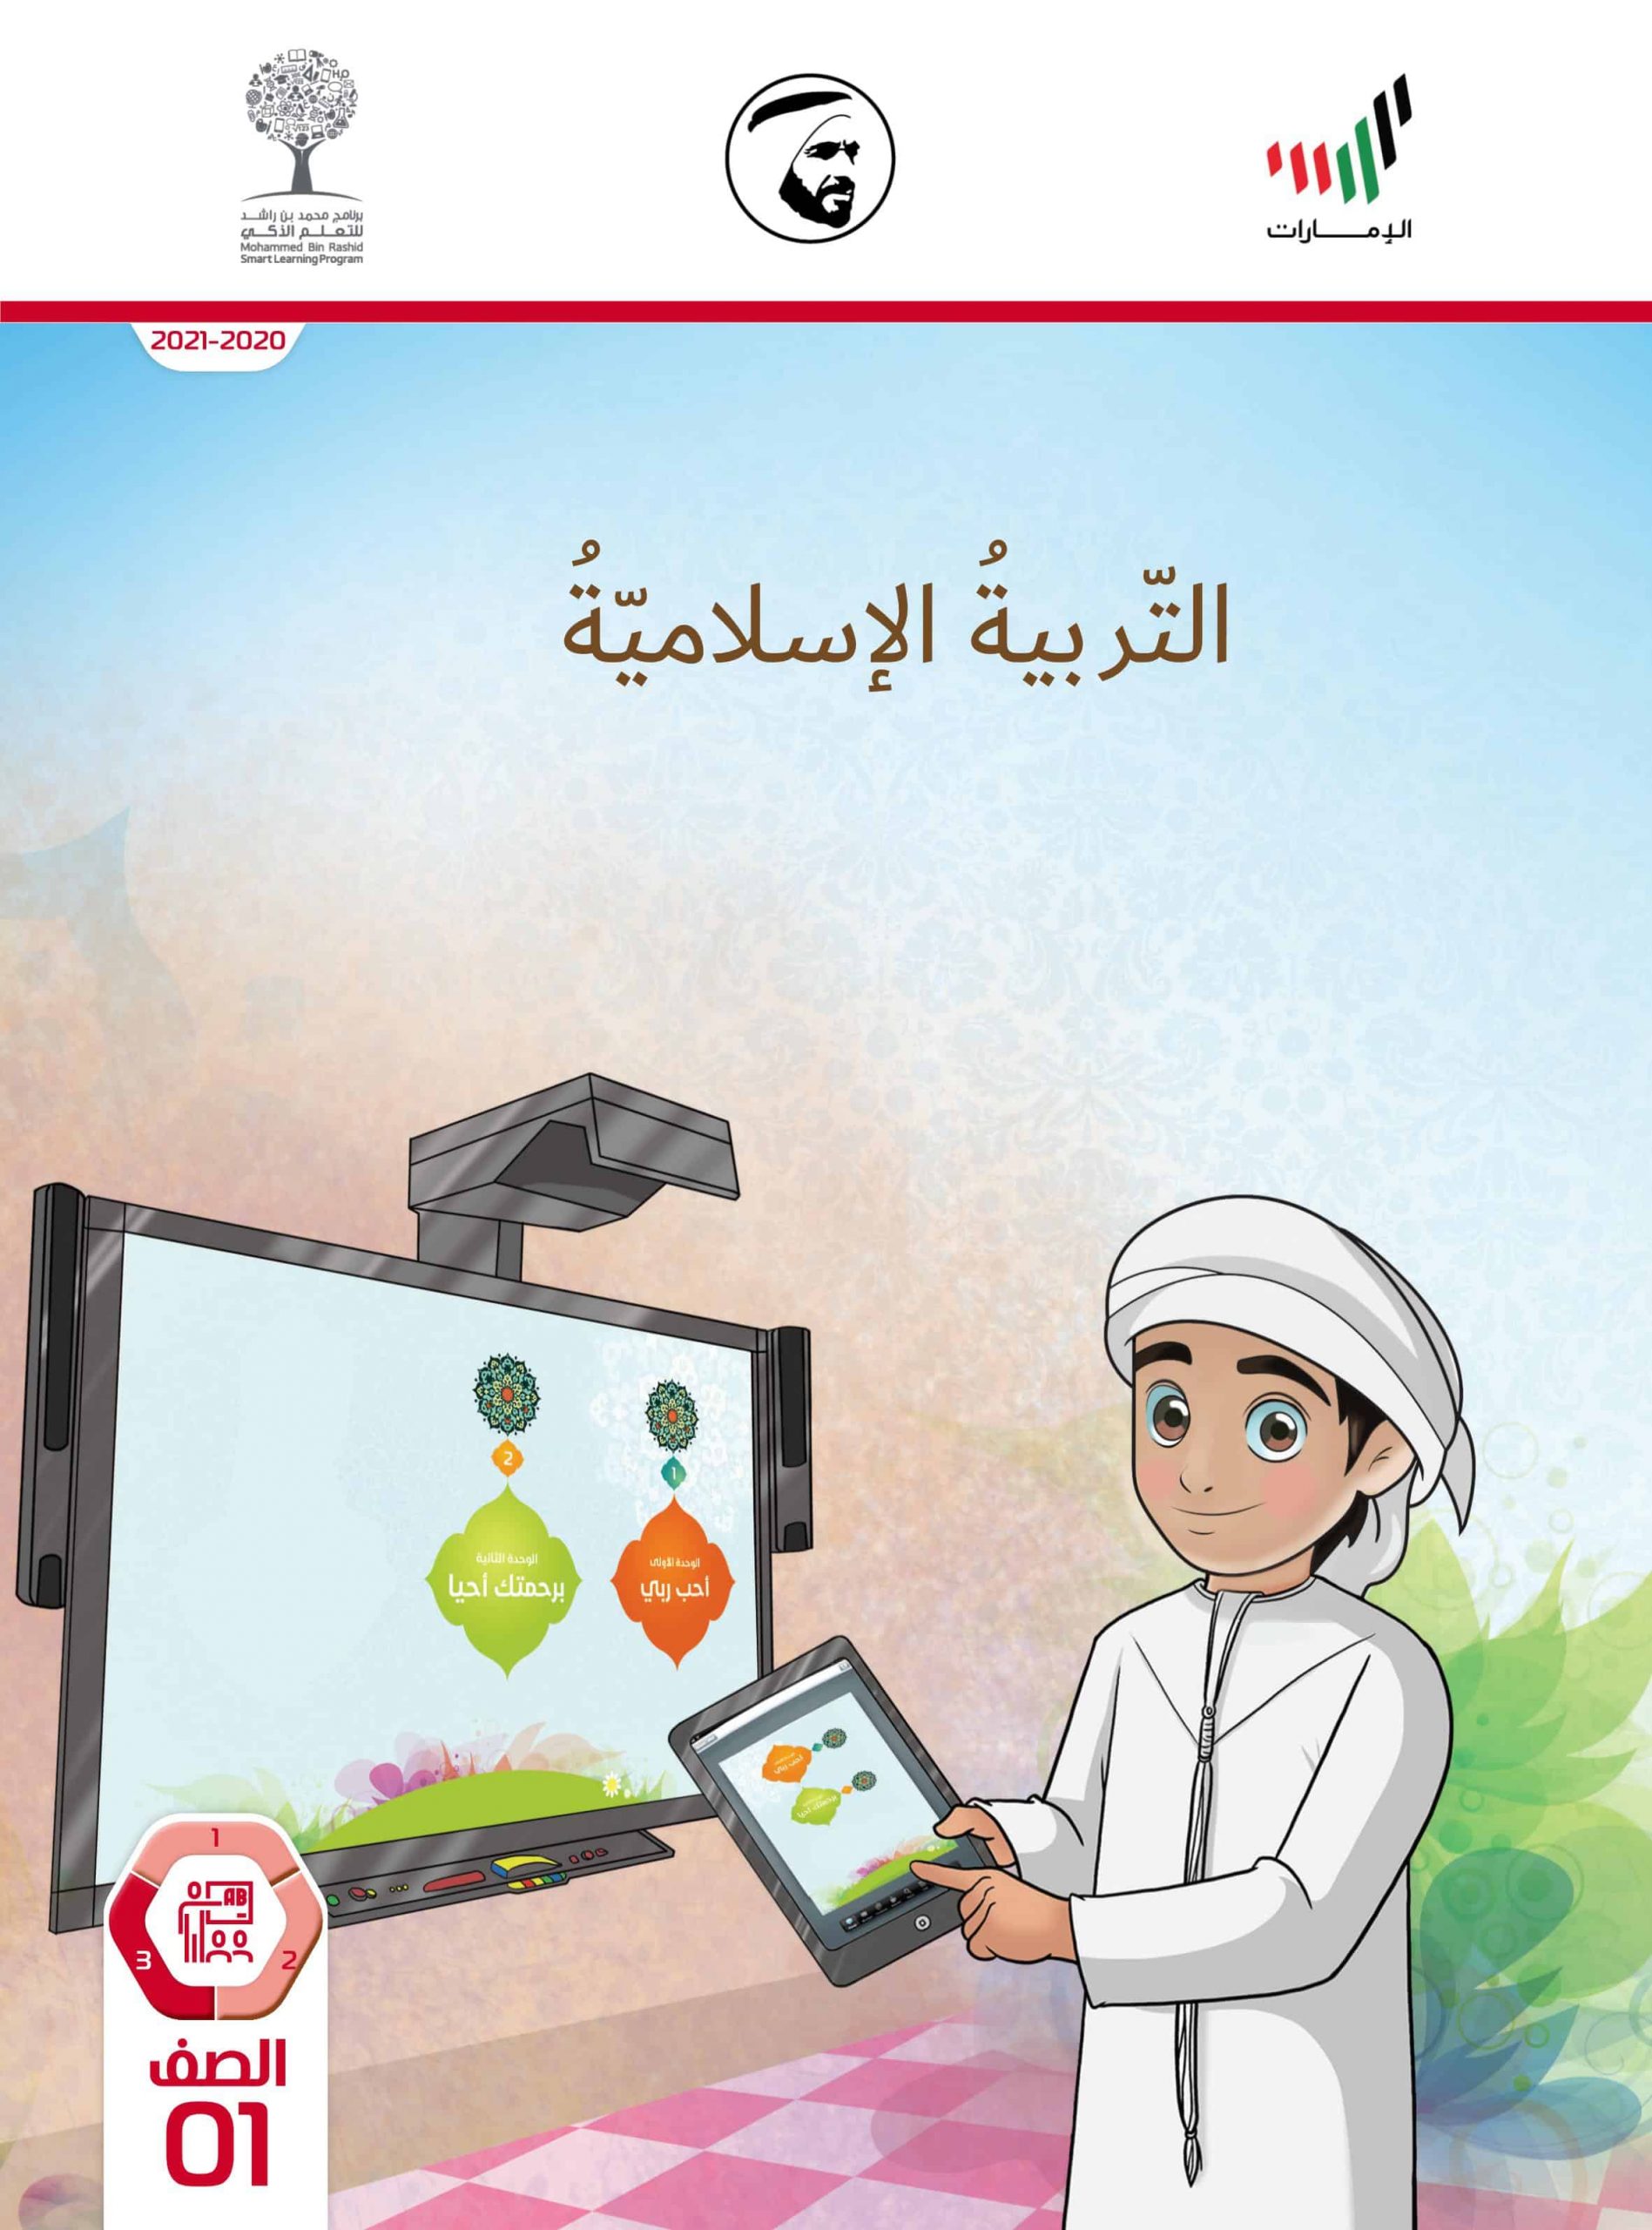 دليل المعلم الفصل الدراسي الثالث 2020-2021 الصف الأول مادة التربية الإسلامية 